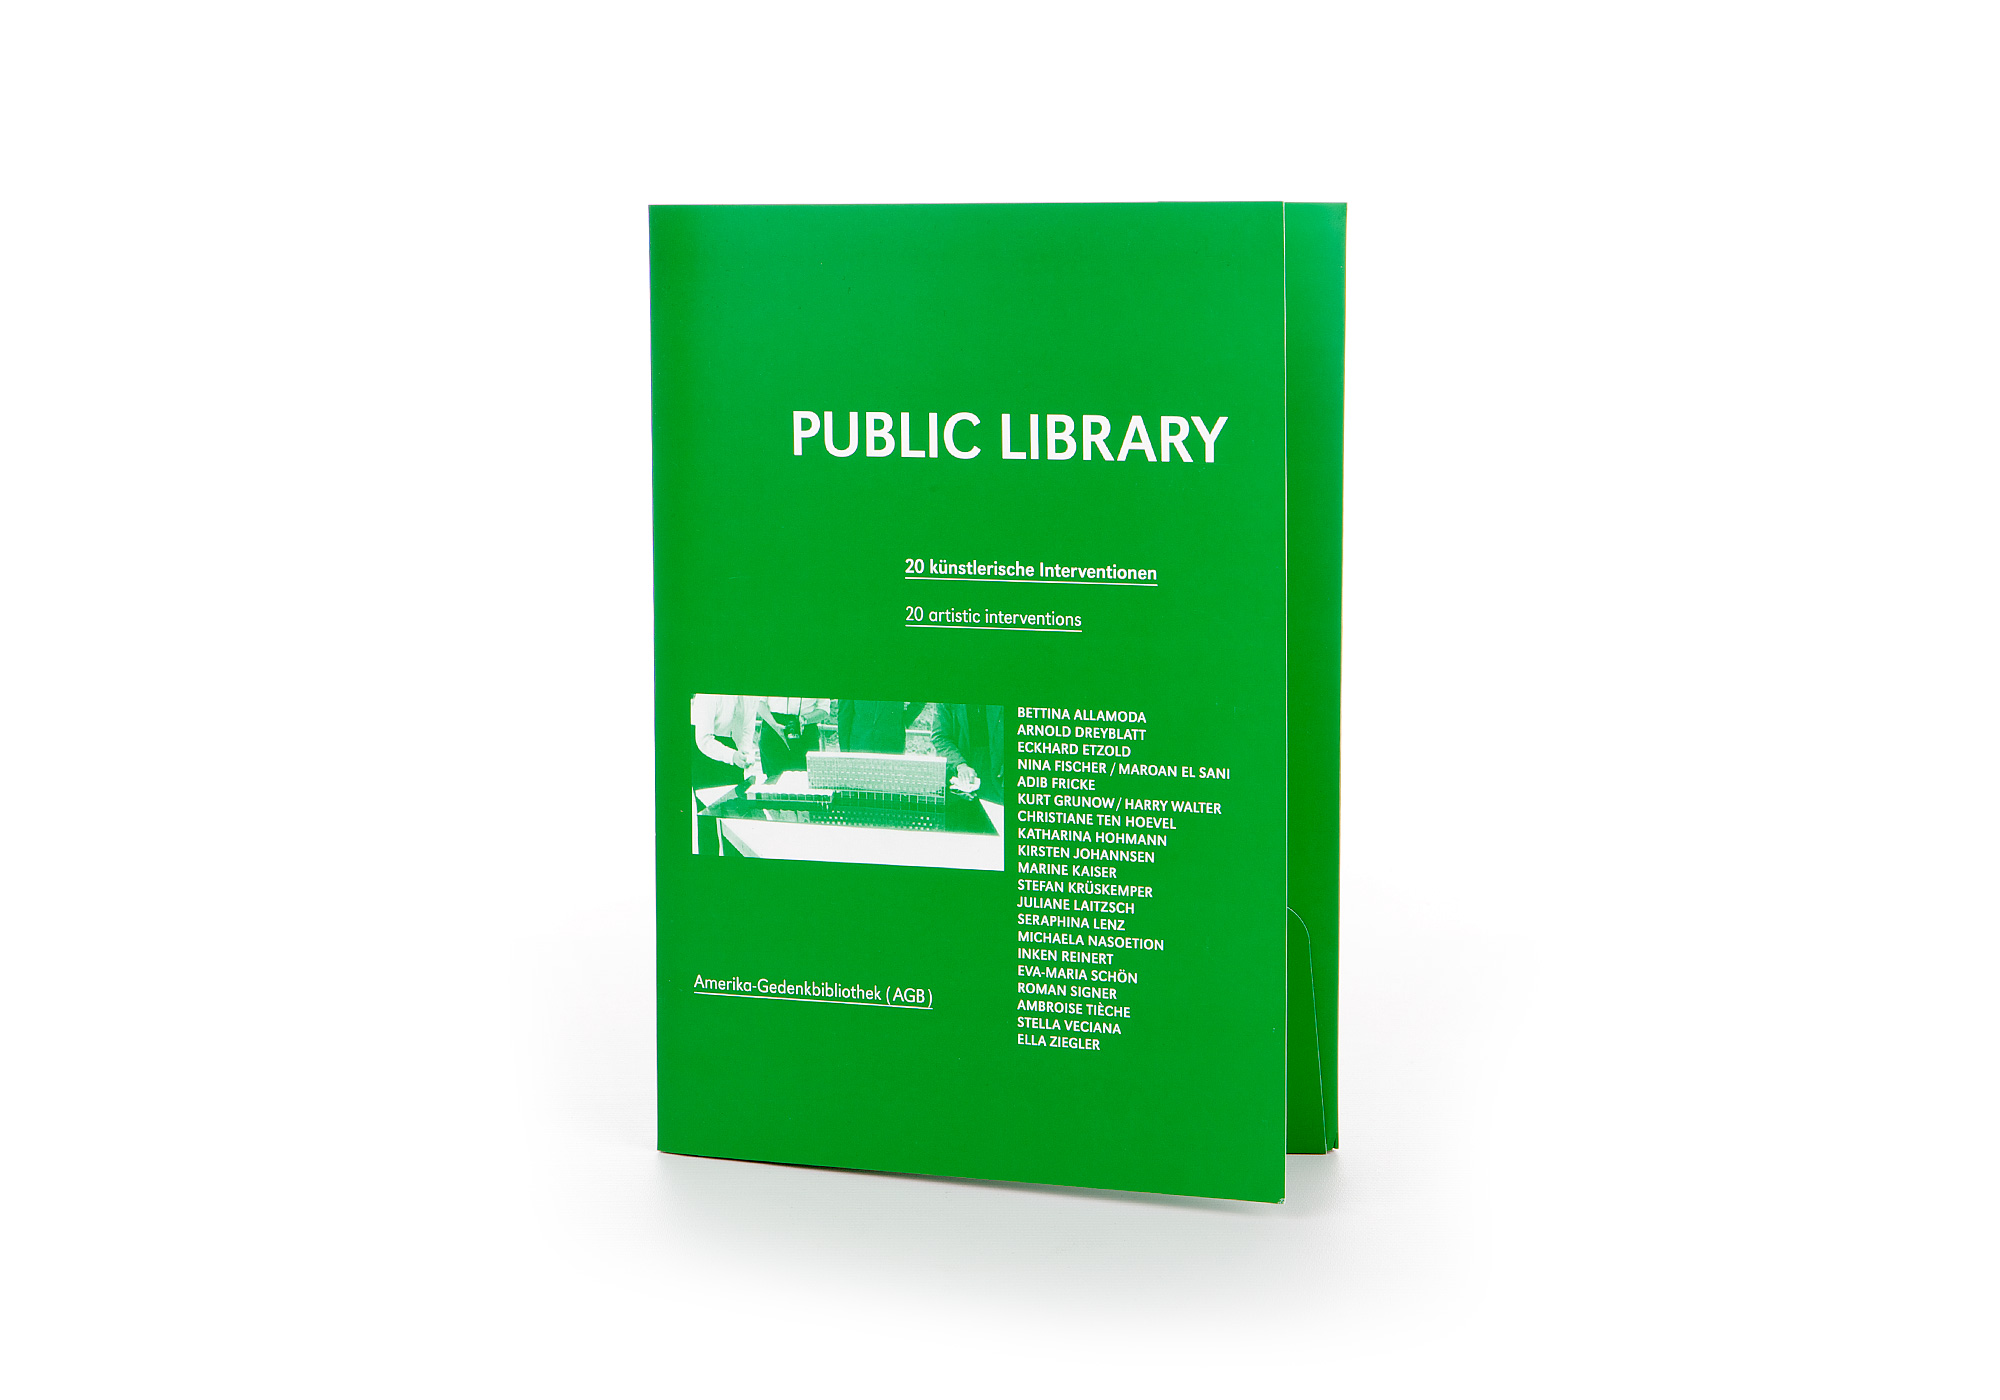 Schroeter-und-Berger_public-library_Edition